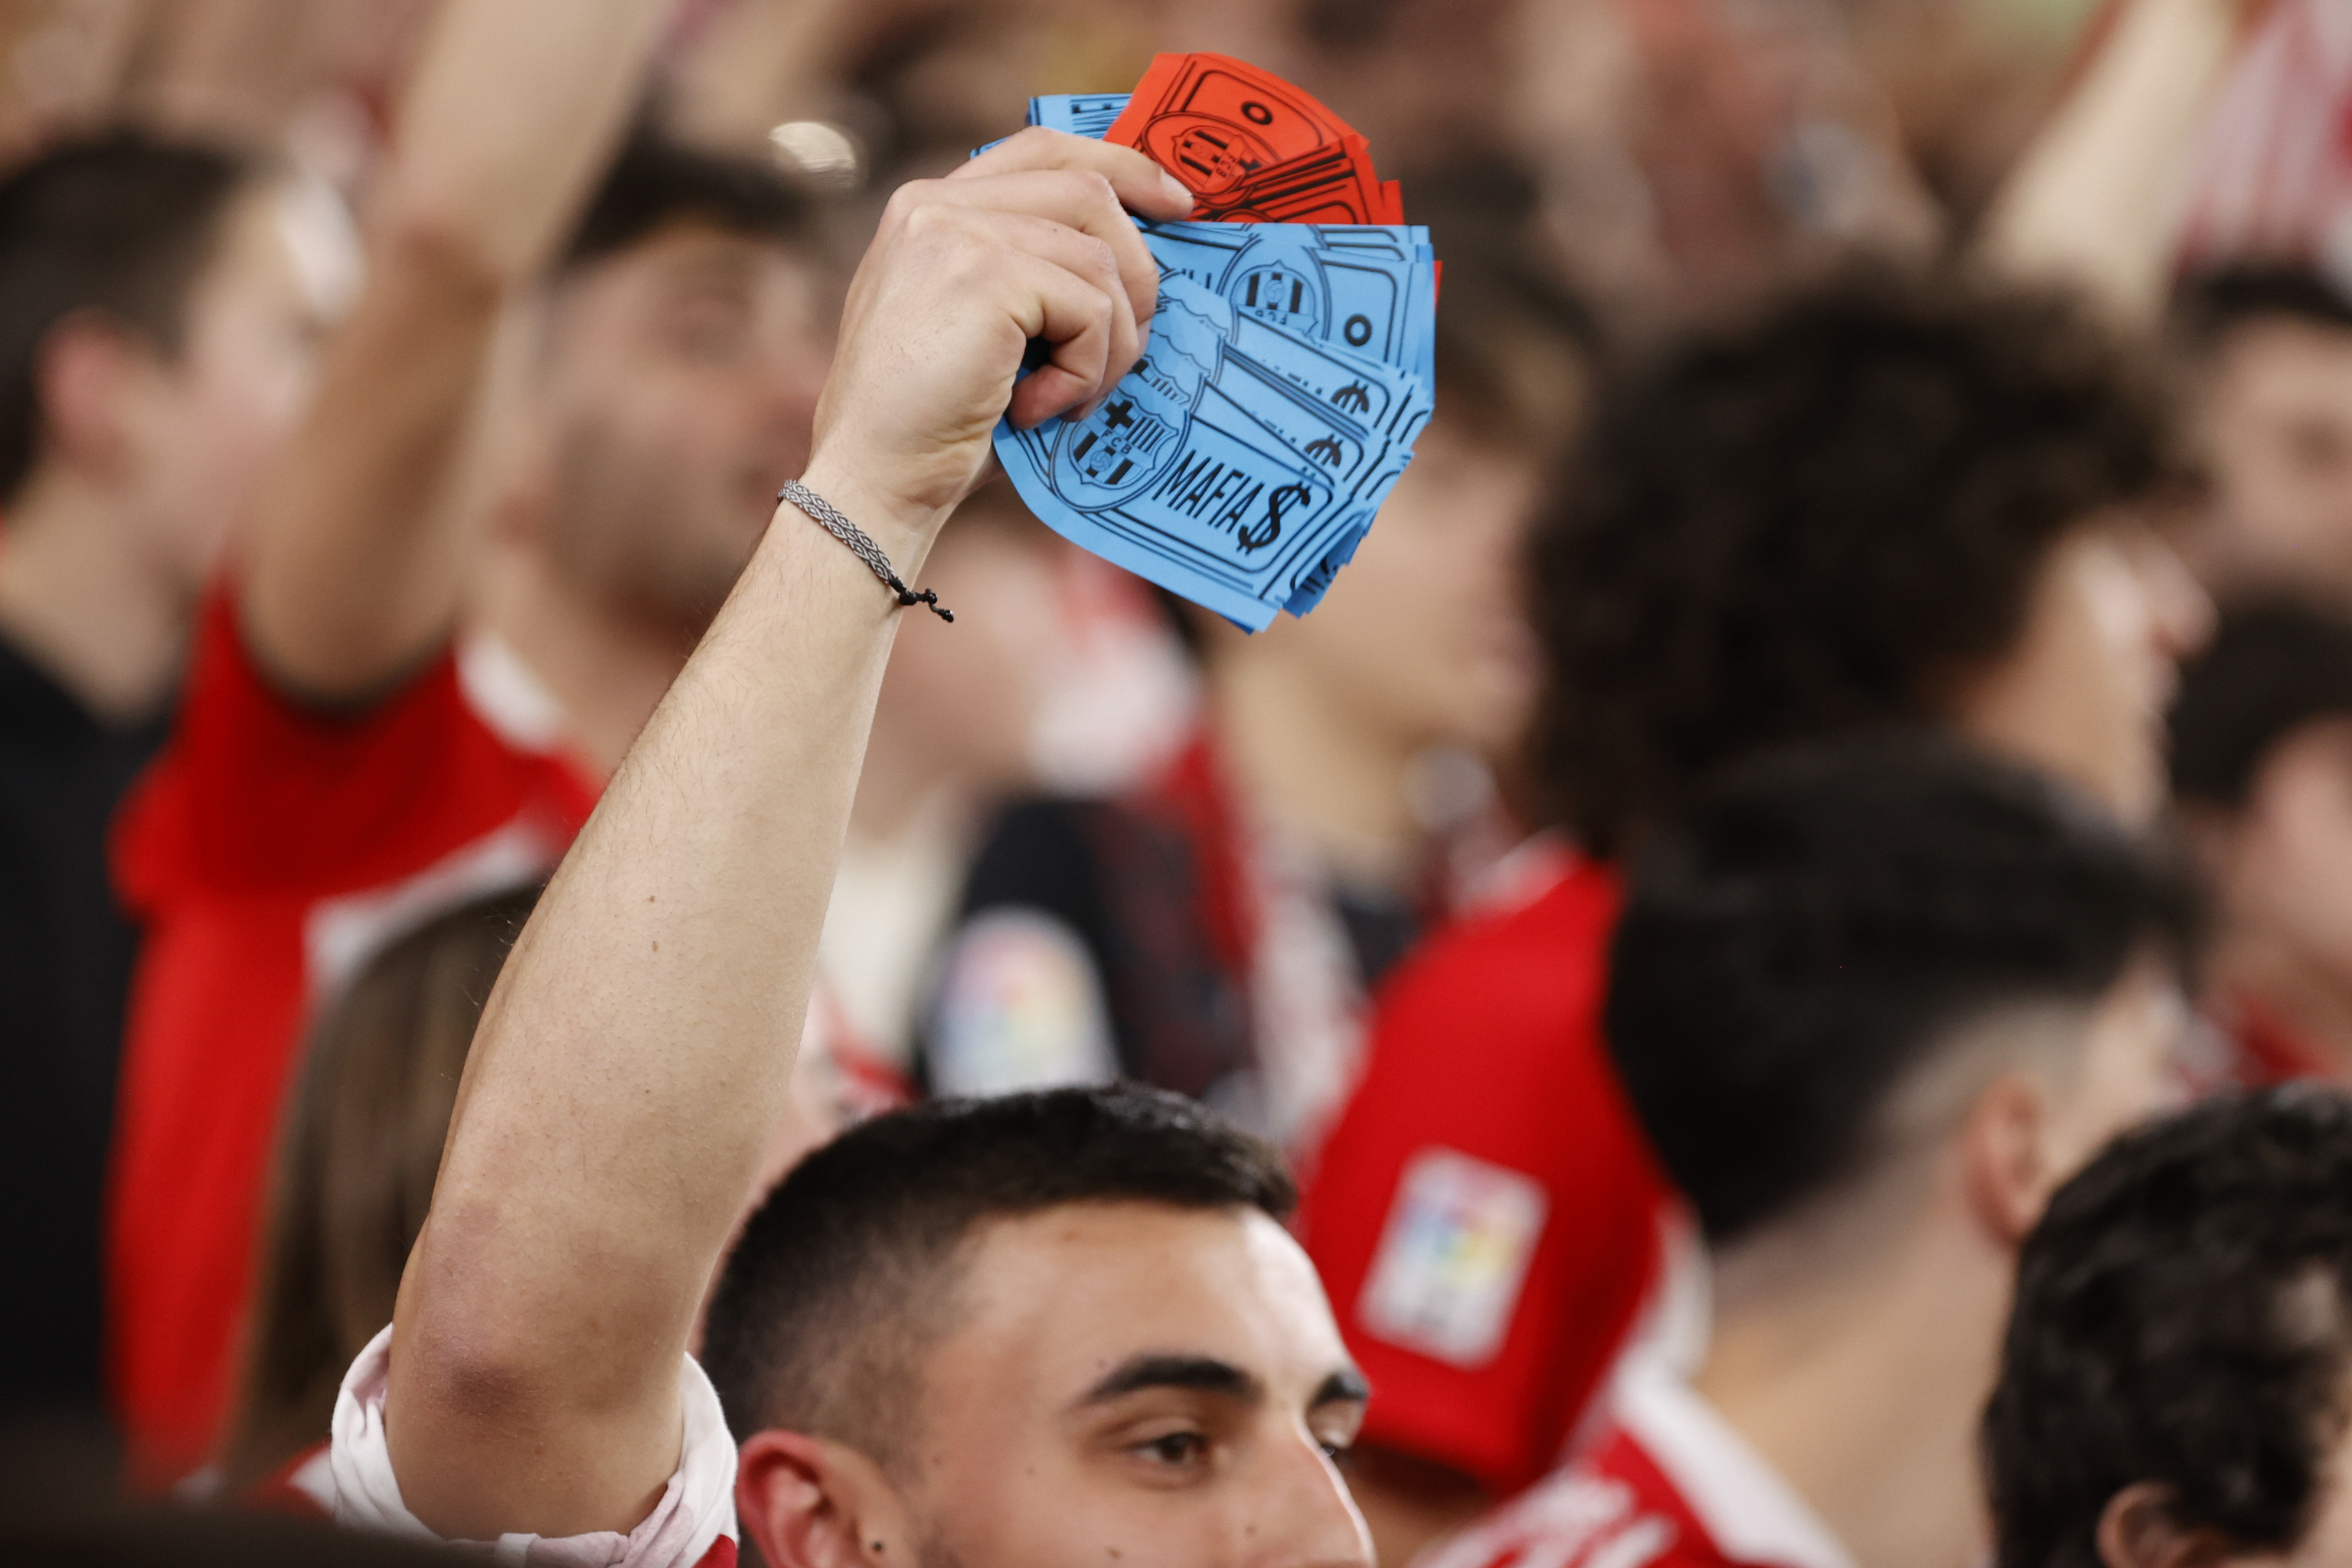 Un joven con billetes con el escudo del FC Barcelona y la palabra "mafia".